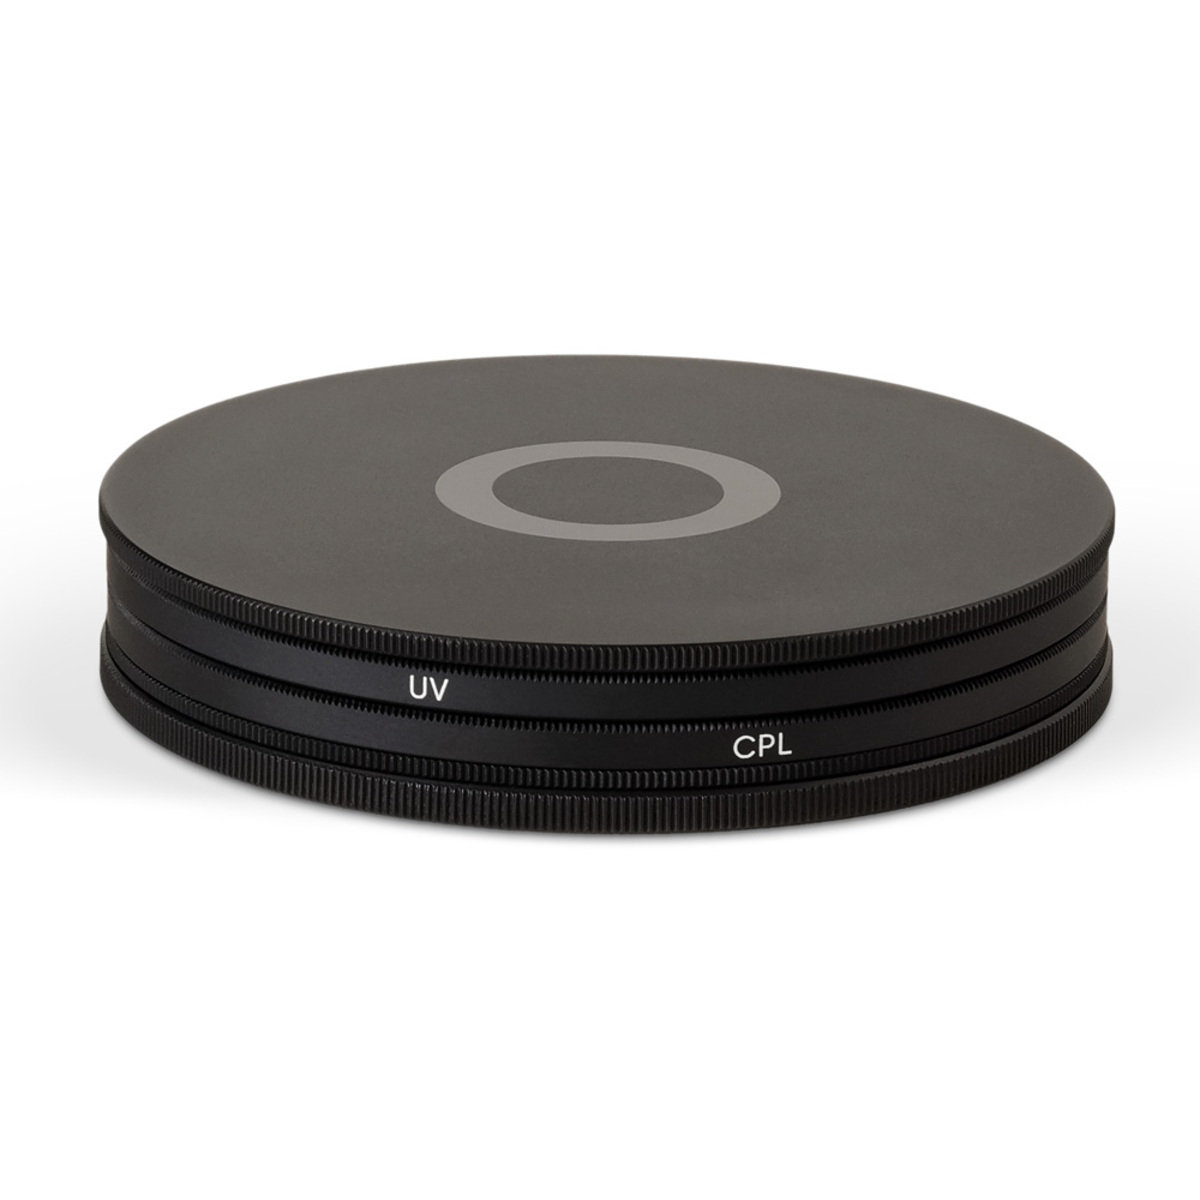 Urth 40.5mm UV + Circular Polarizing (CPL) Objektivfilter Kit (Plus+)